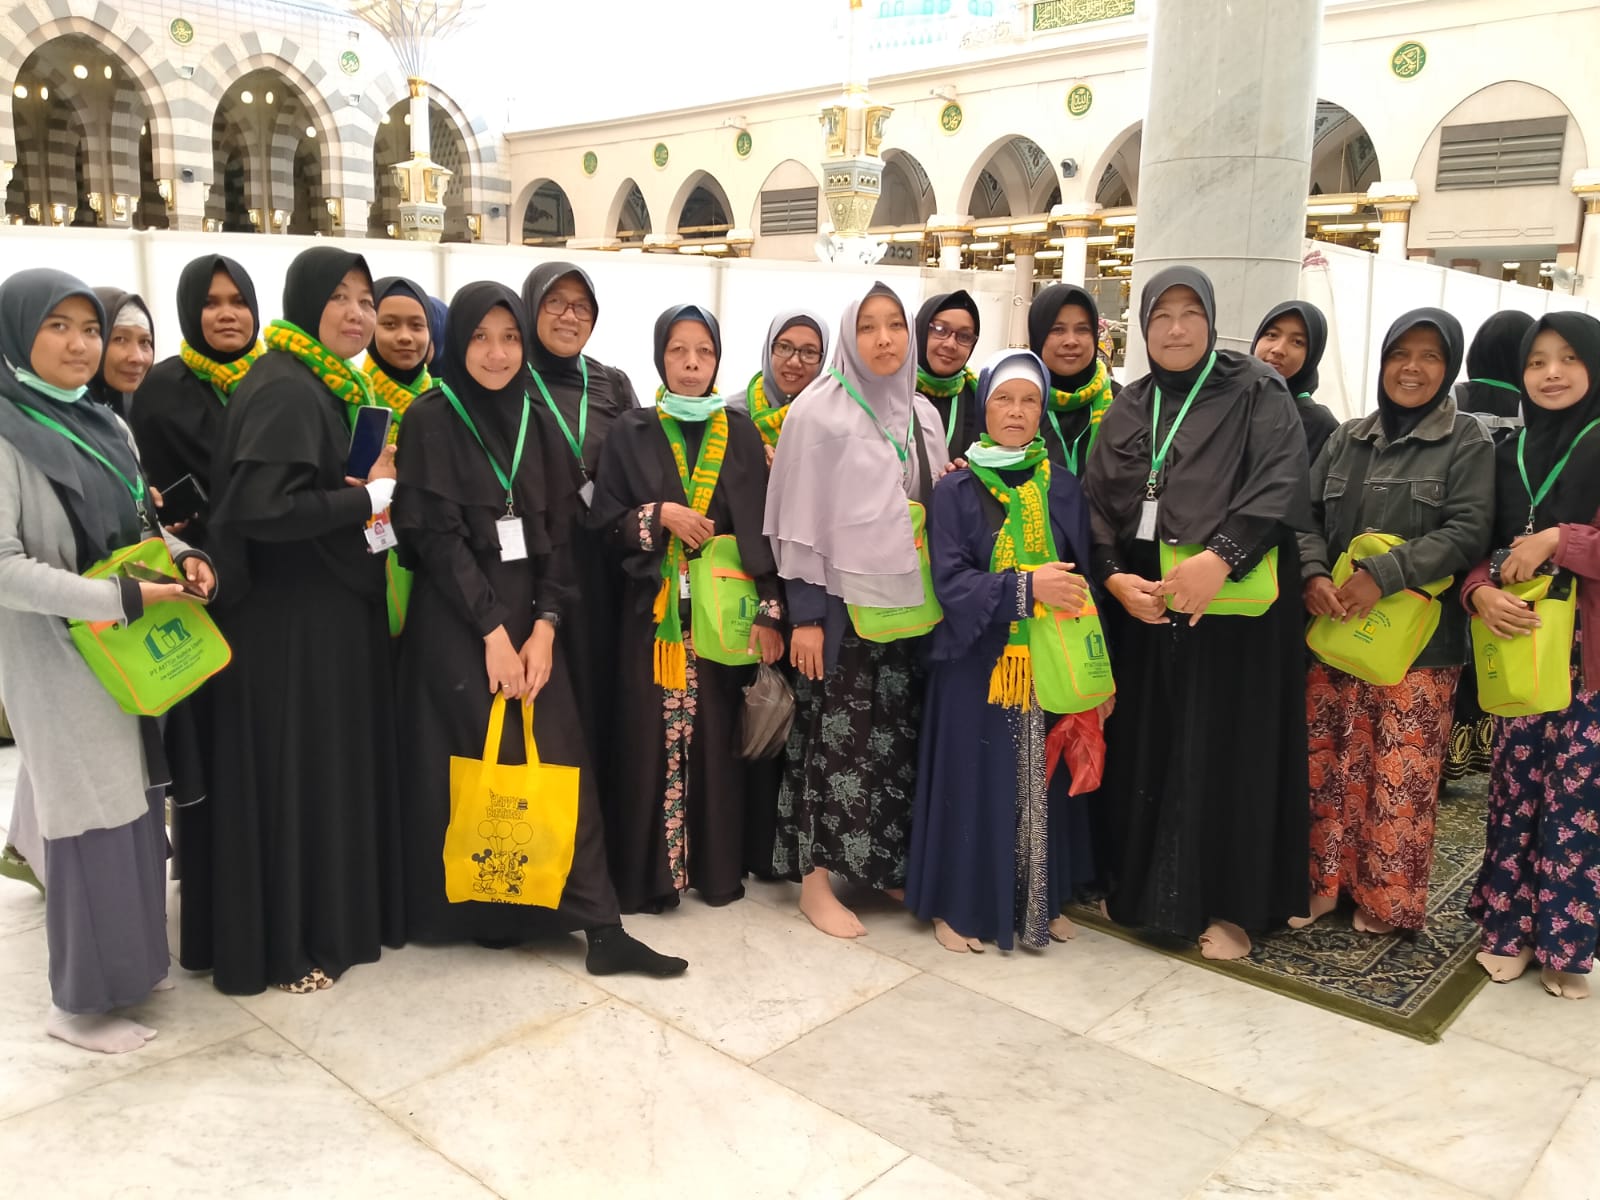 Agency Travel Haji Umroh Yogyakarta Resmi